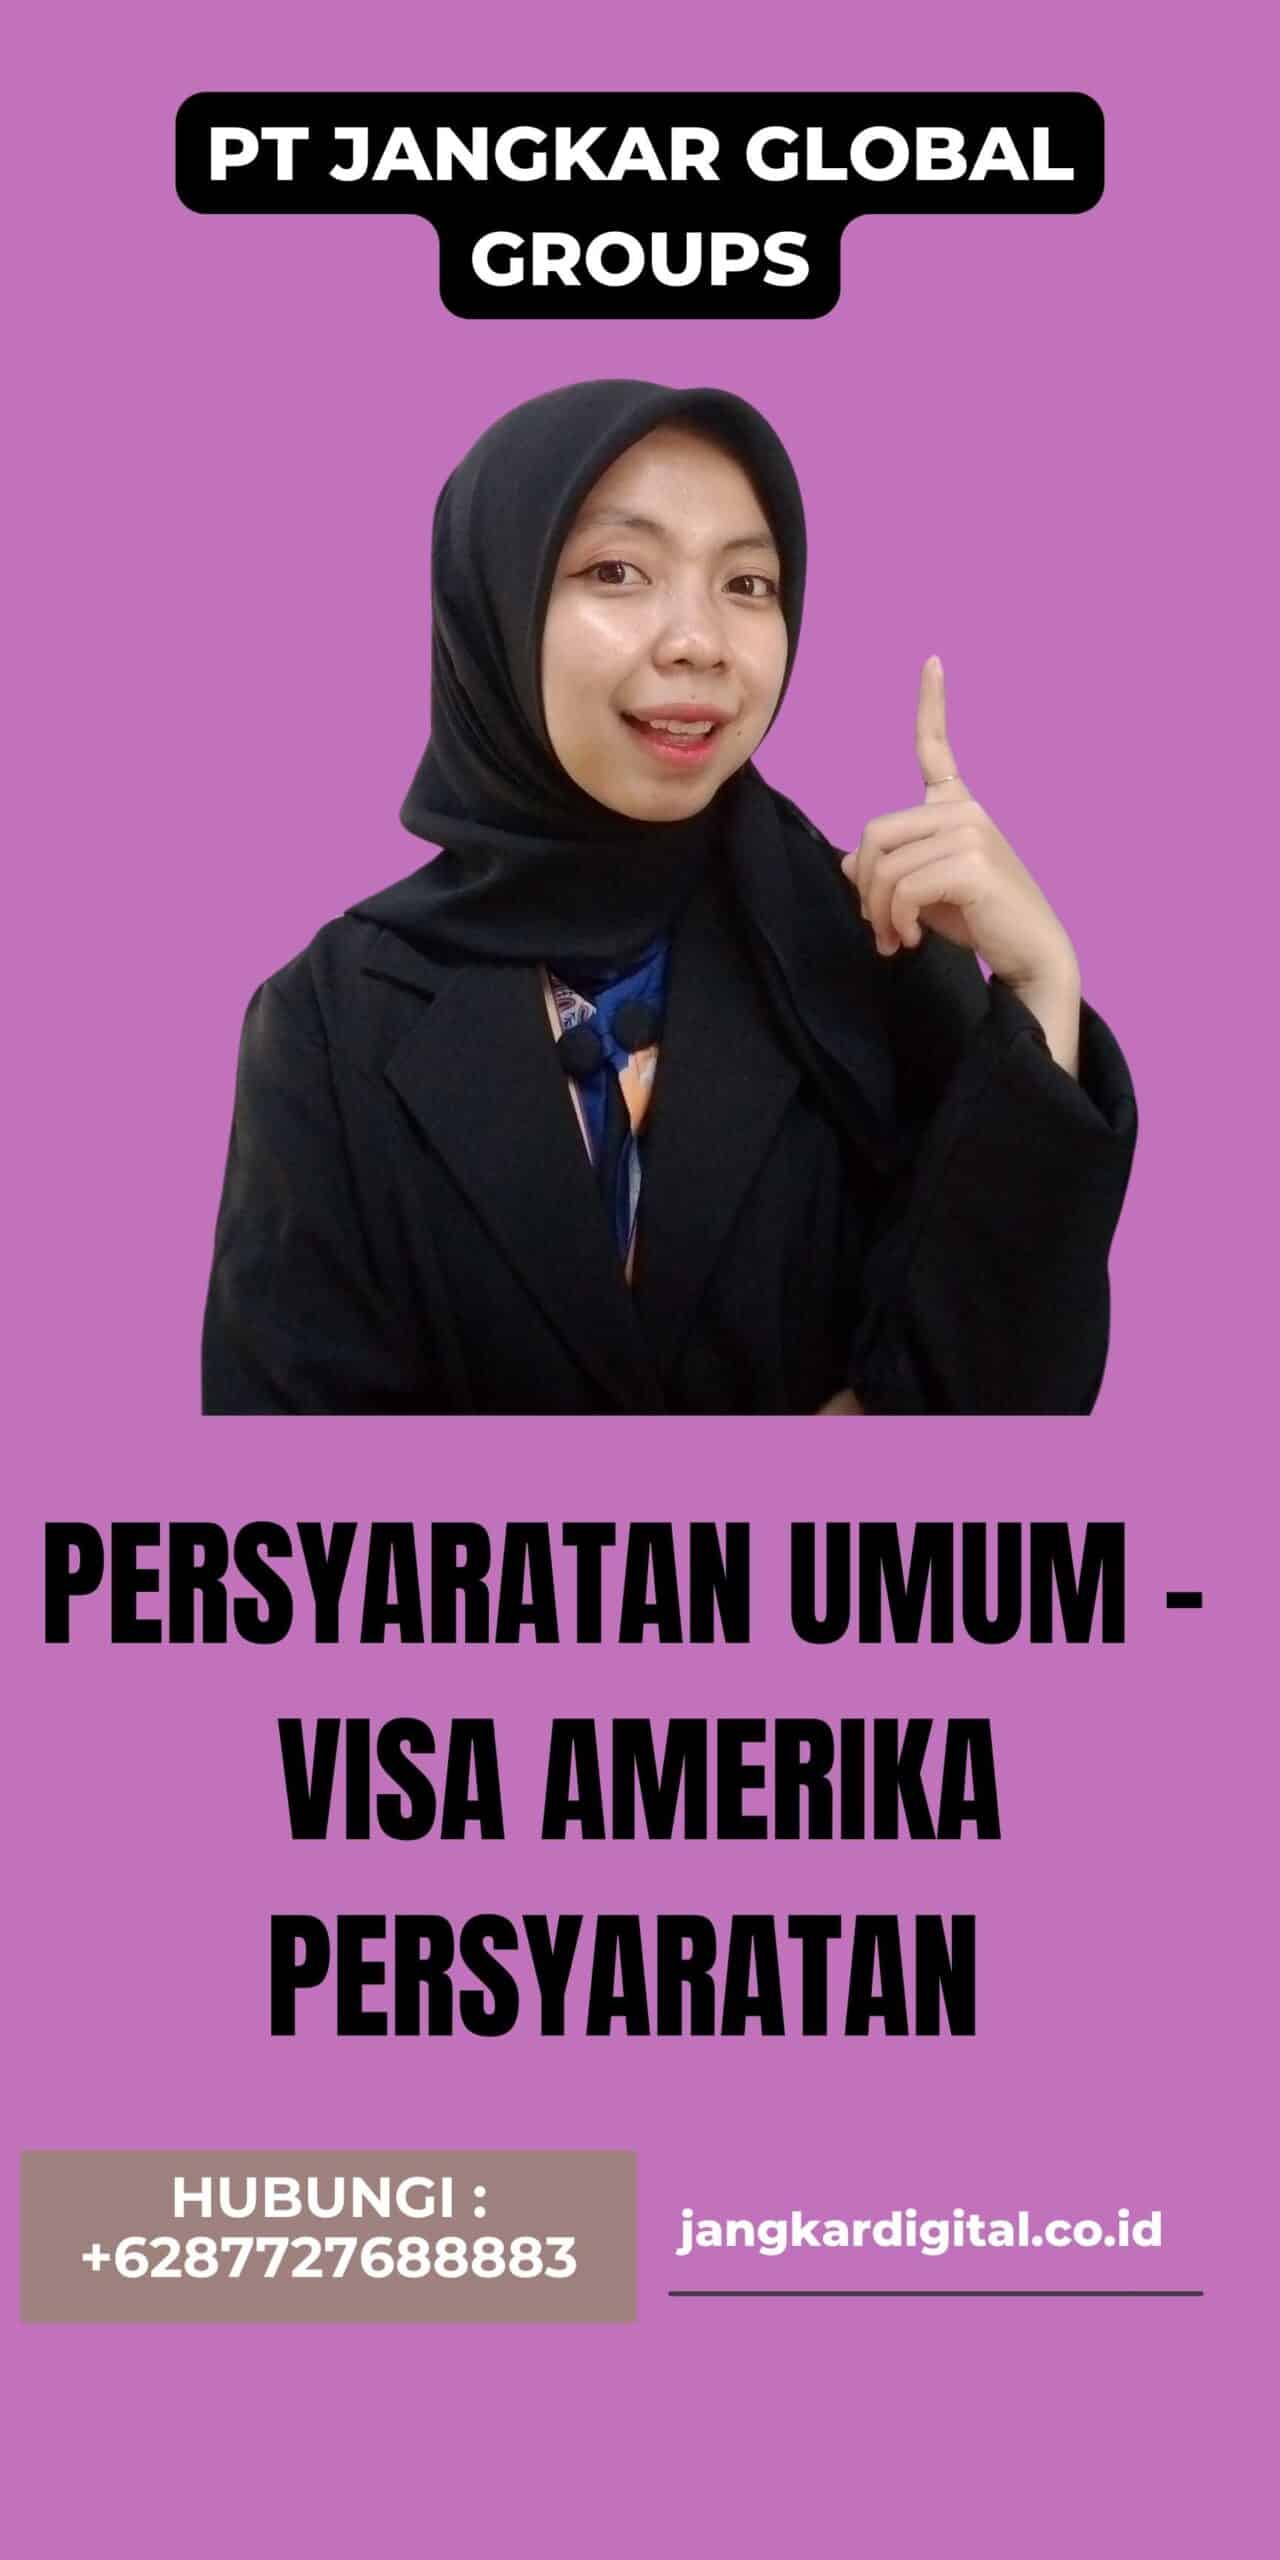 Persyaratan Umum - Visa Amerika Persyaratan